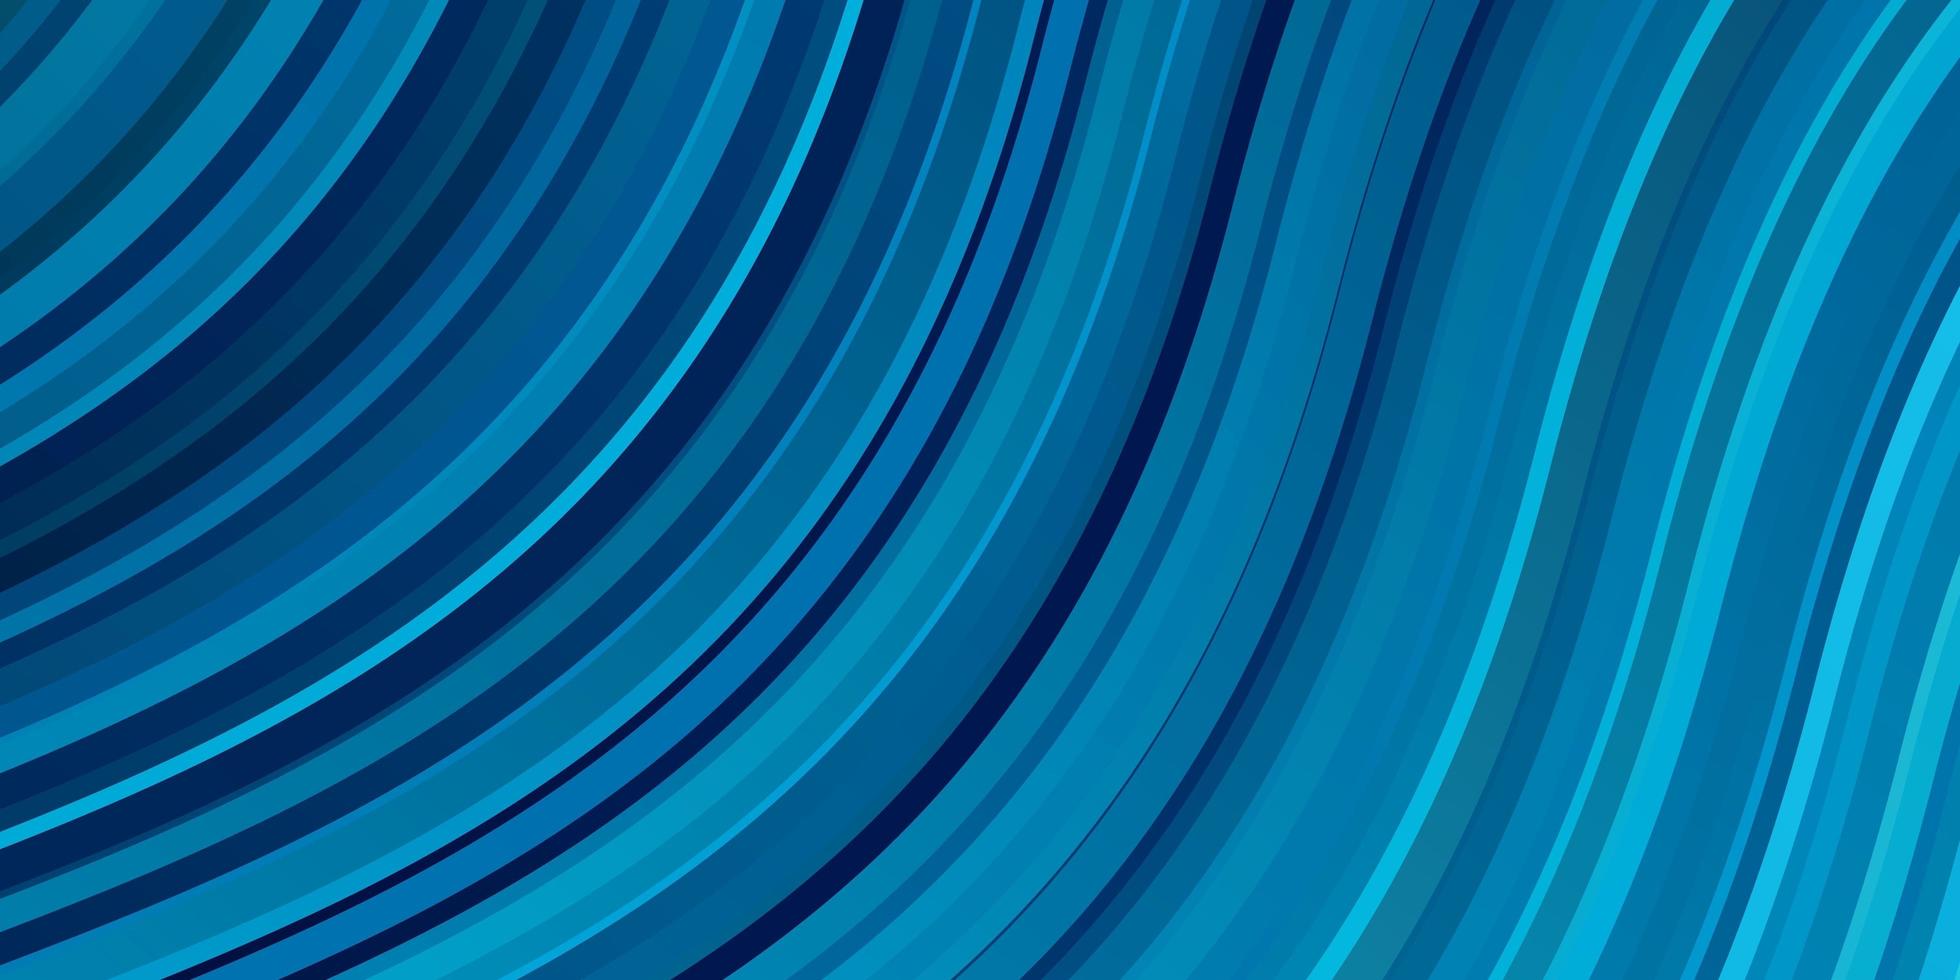 sfondo vettoriale azzurro con linee piegate